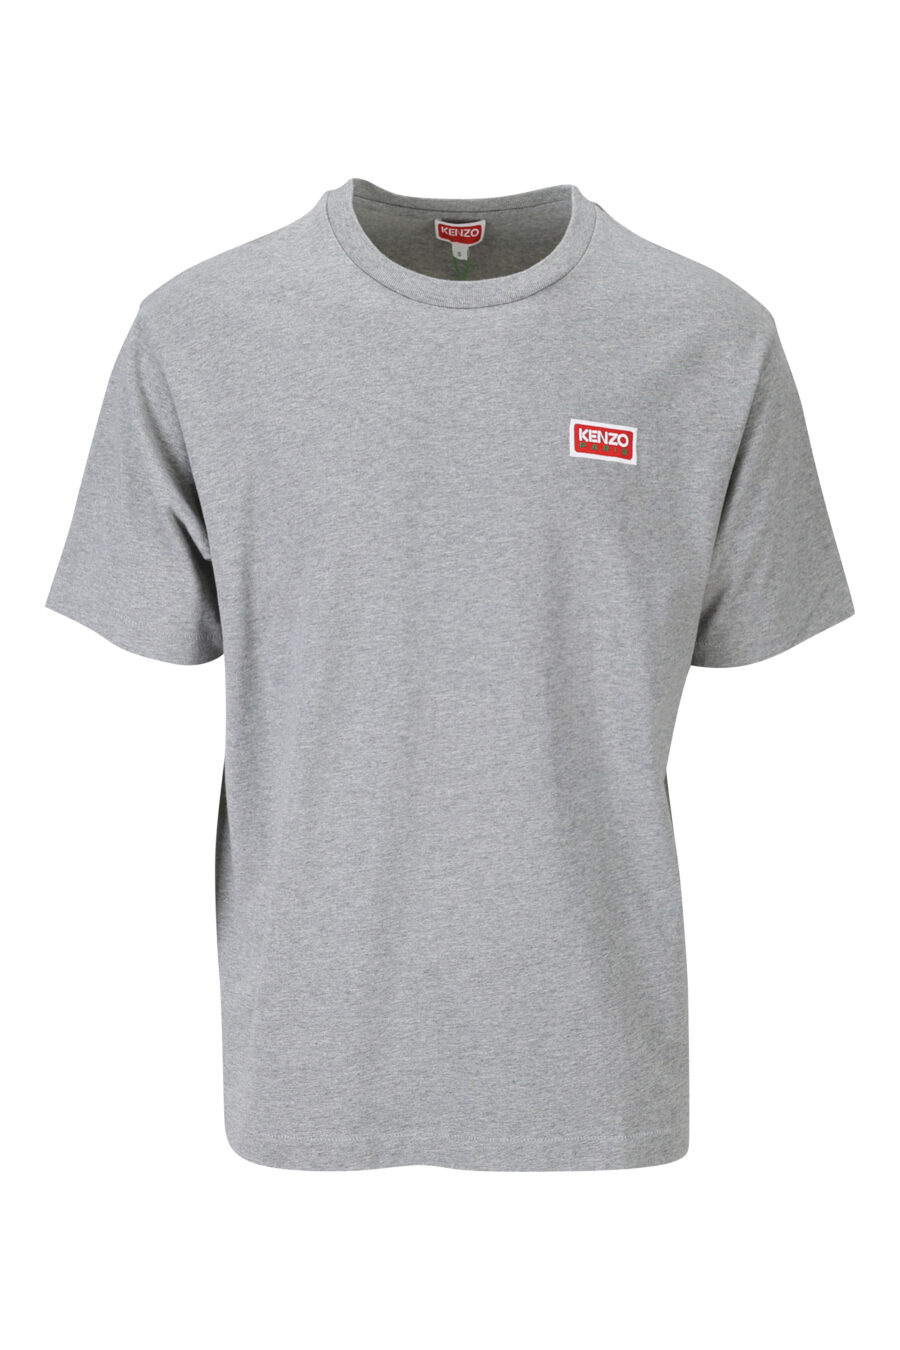 T-shirt gris avec minilogo "kenzo paris" - 3612230543188